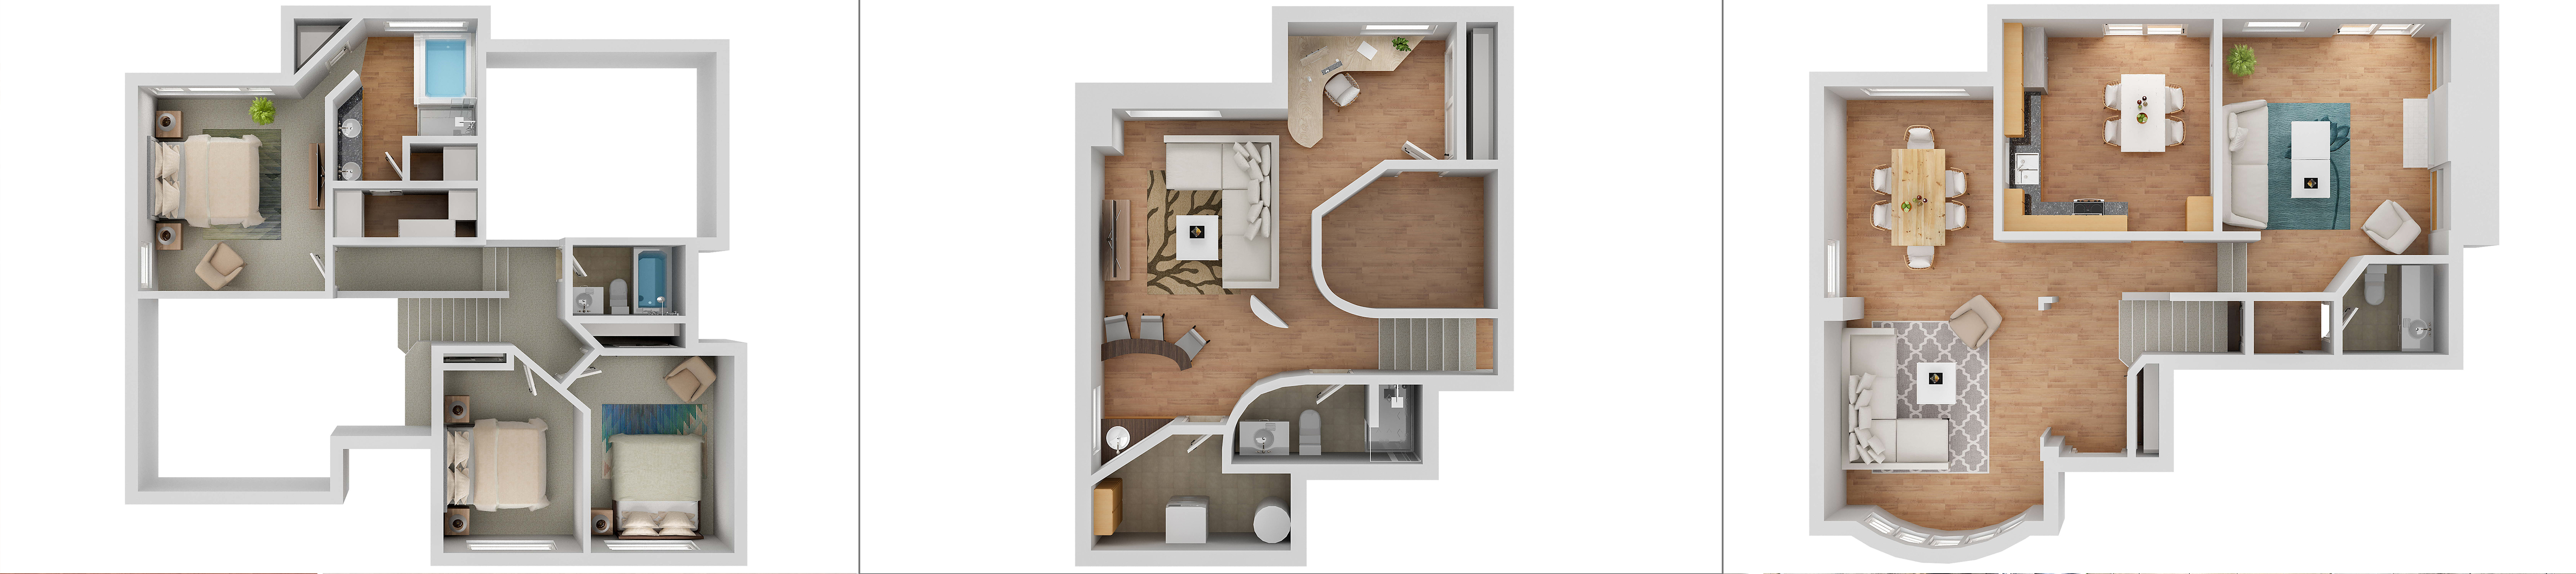 3D_Floor_Plan.jpg